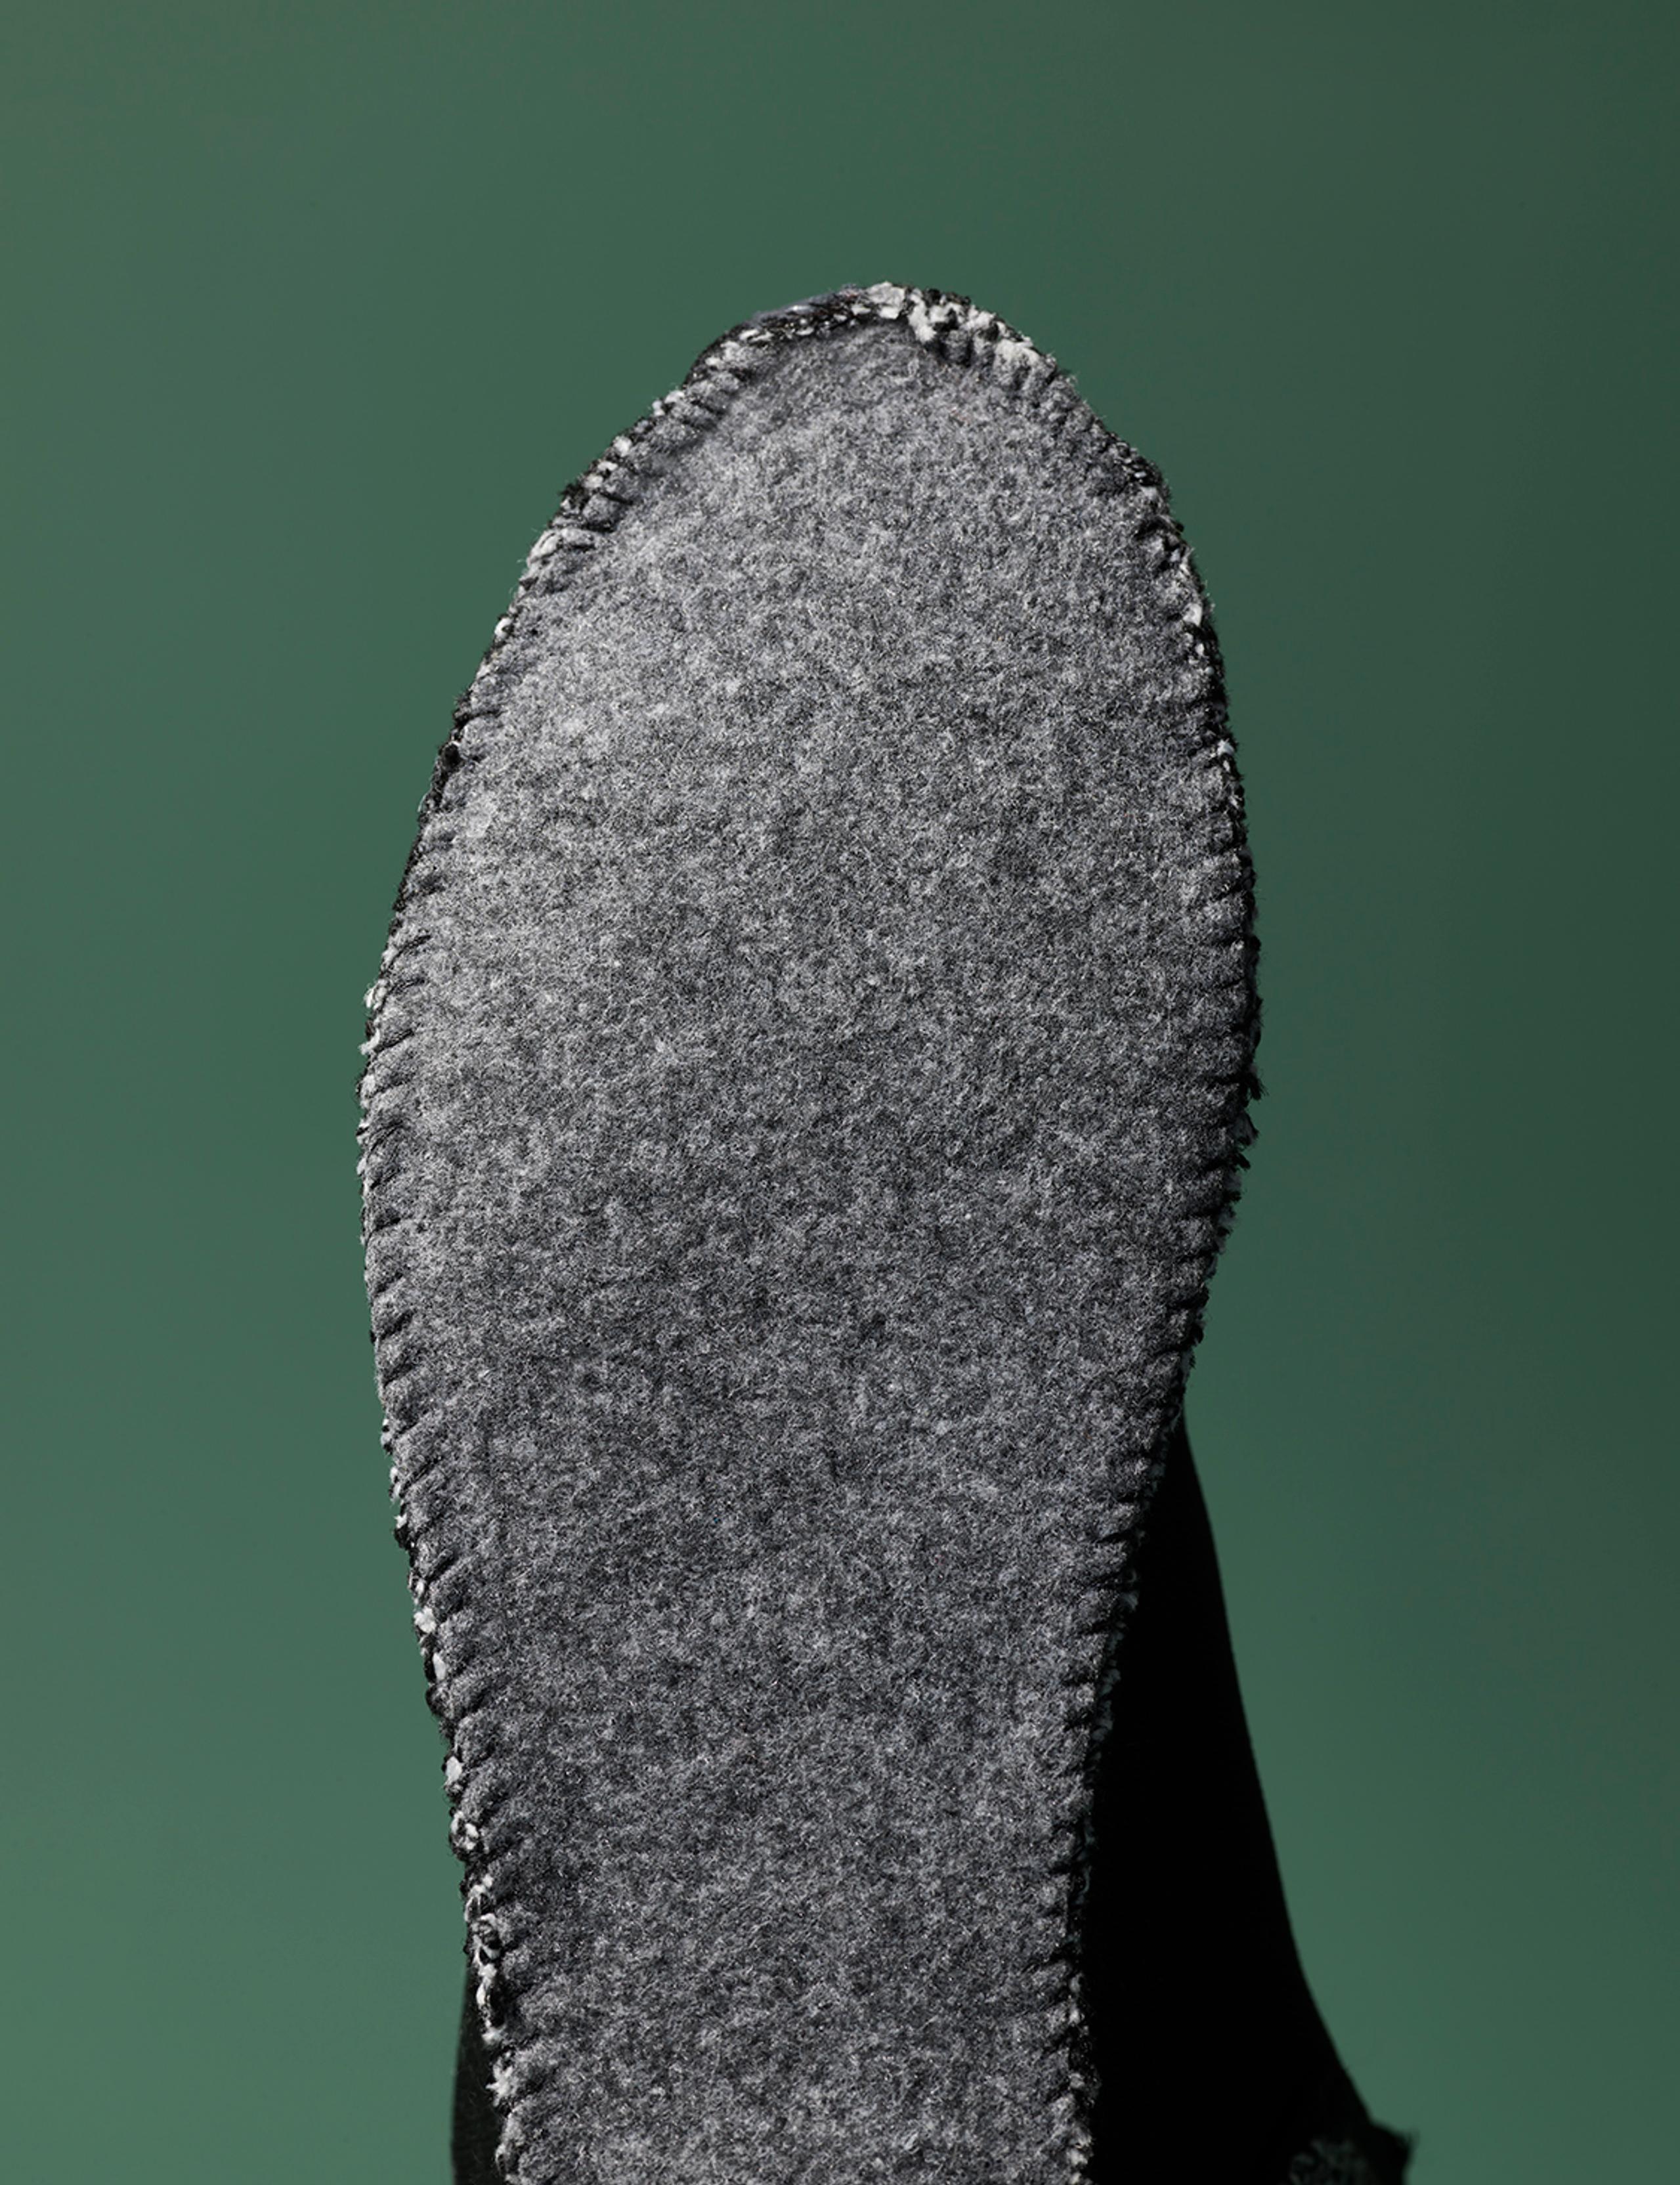 View of felt sole underside of sock bootie